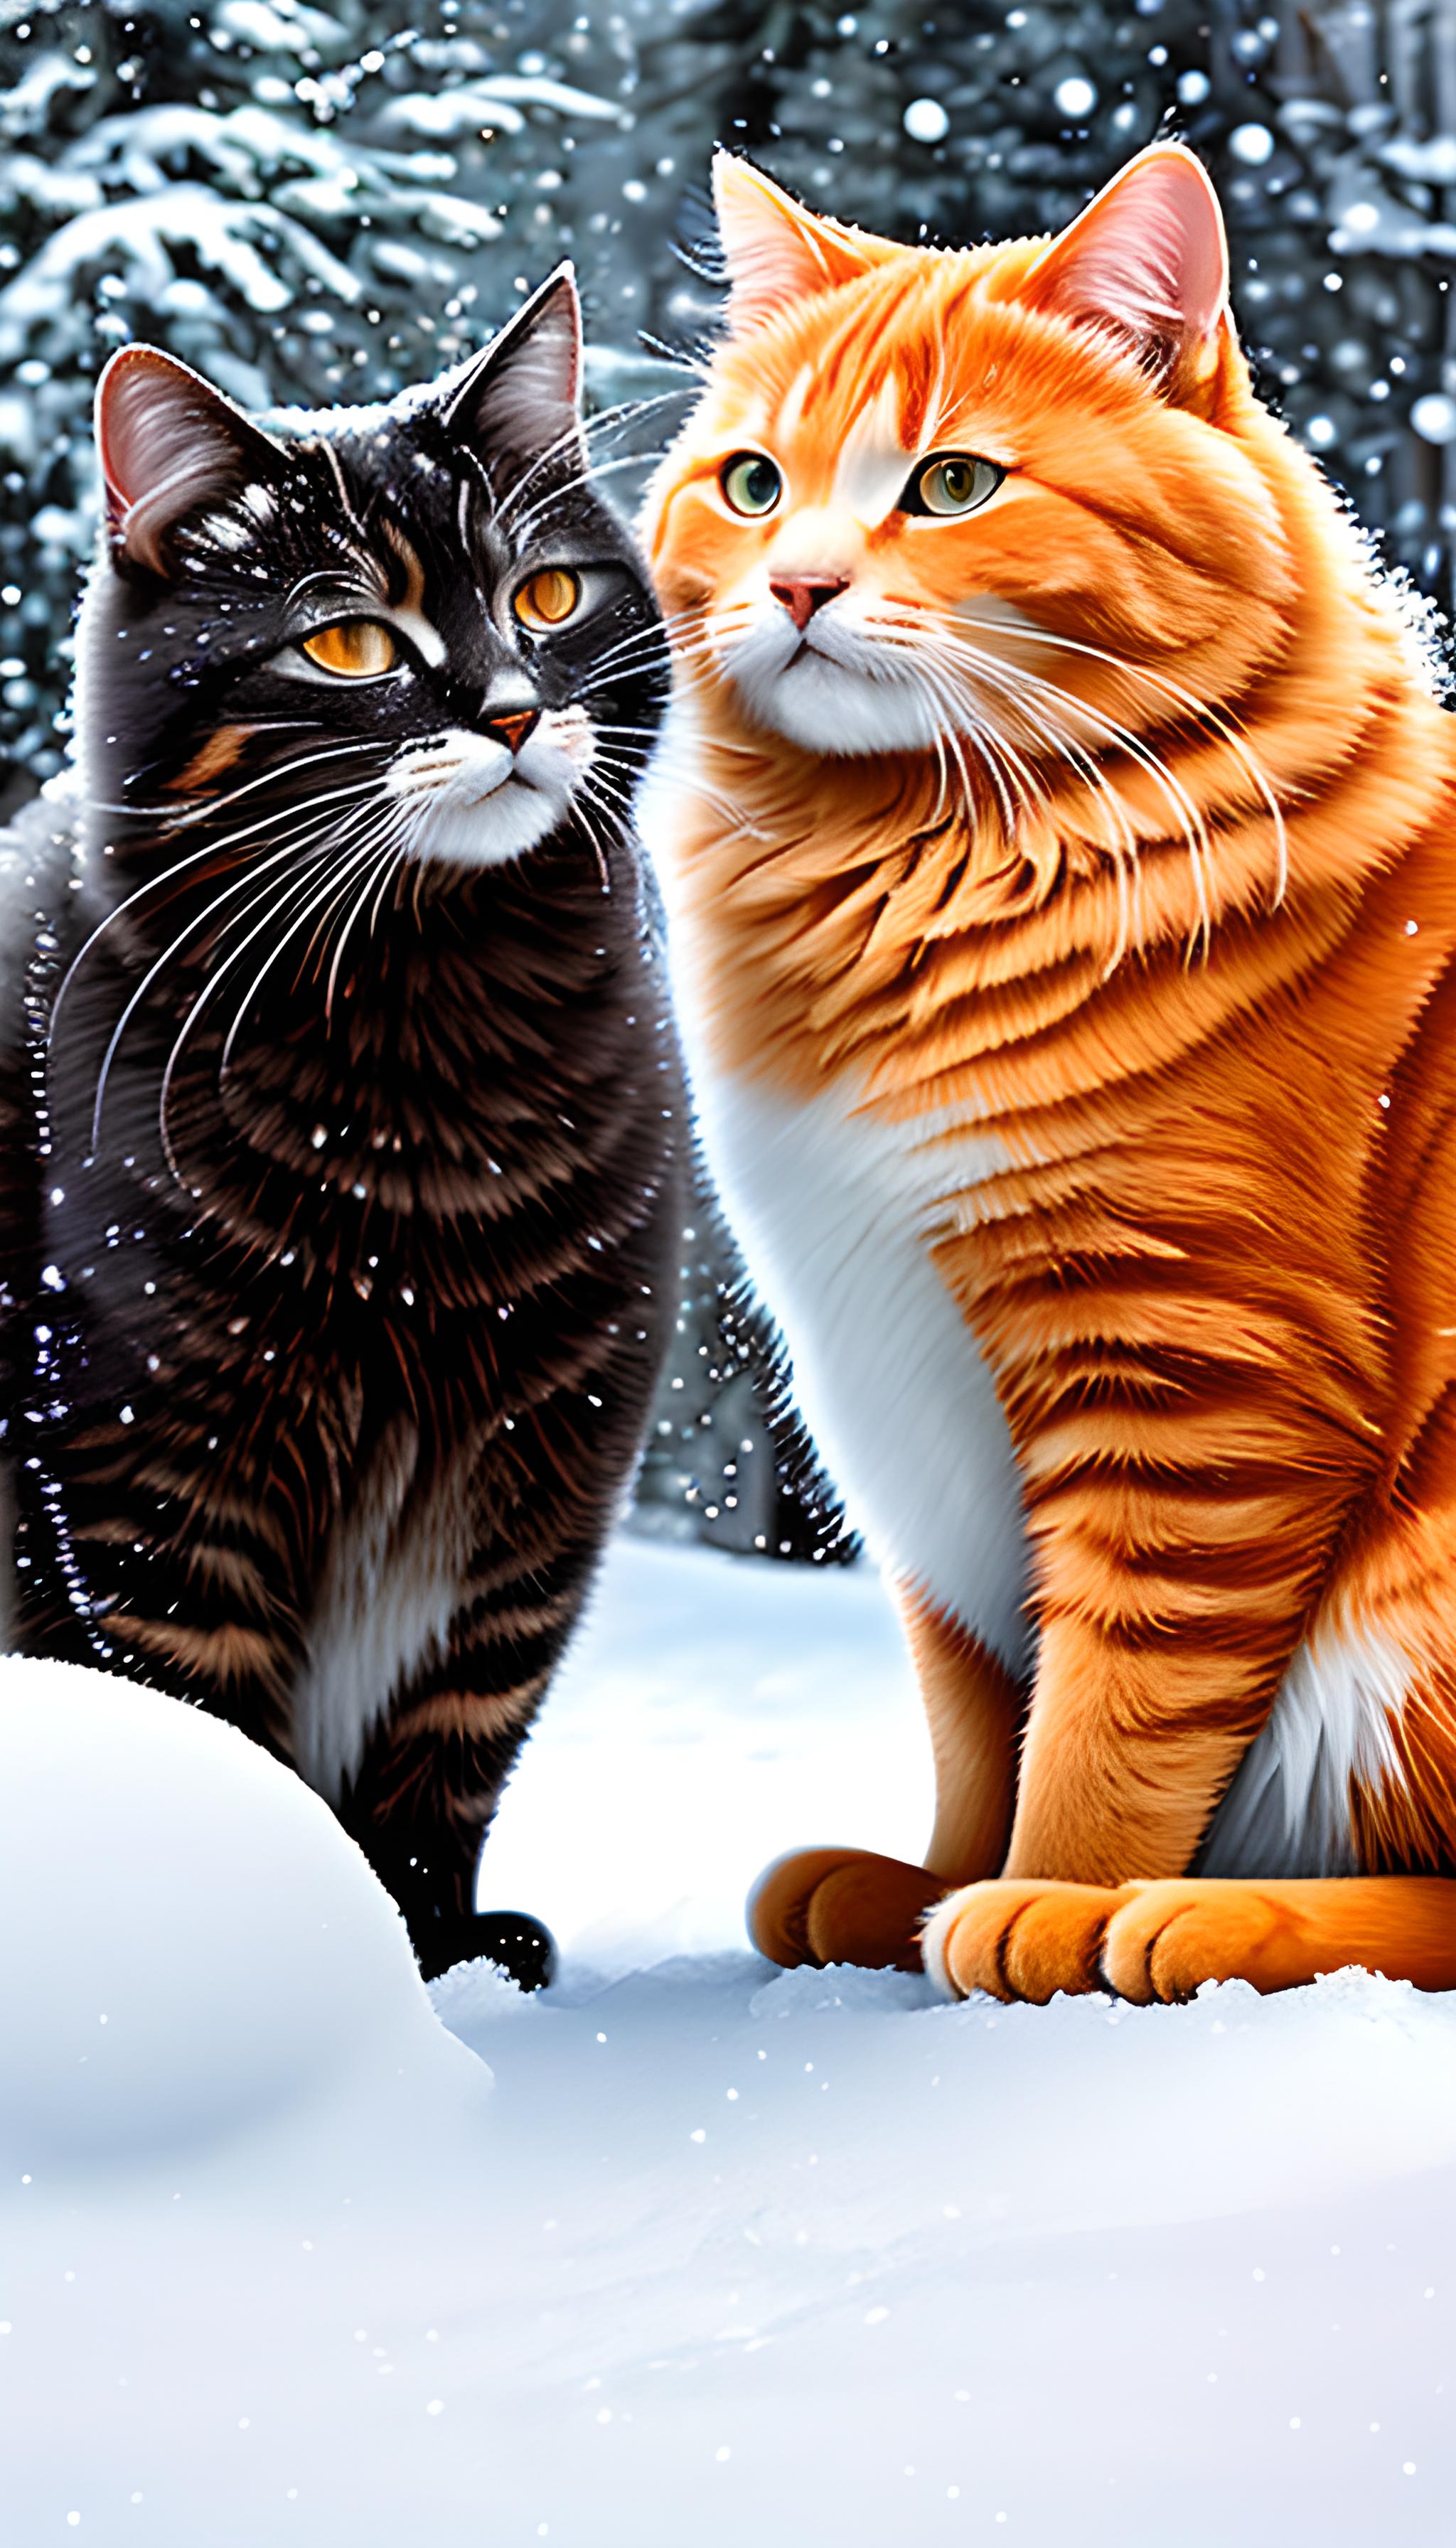 雪地上的一对情侣猫